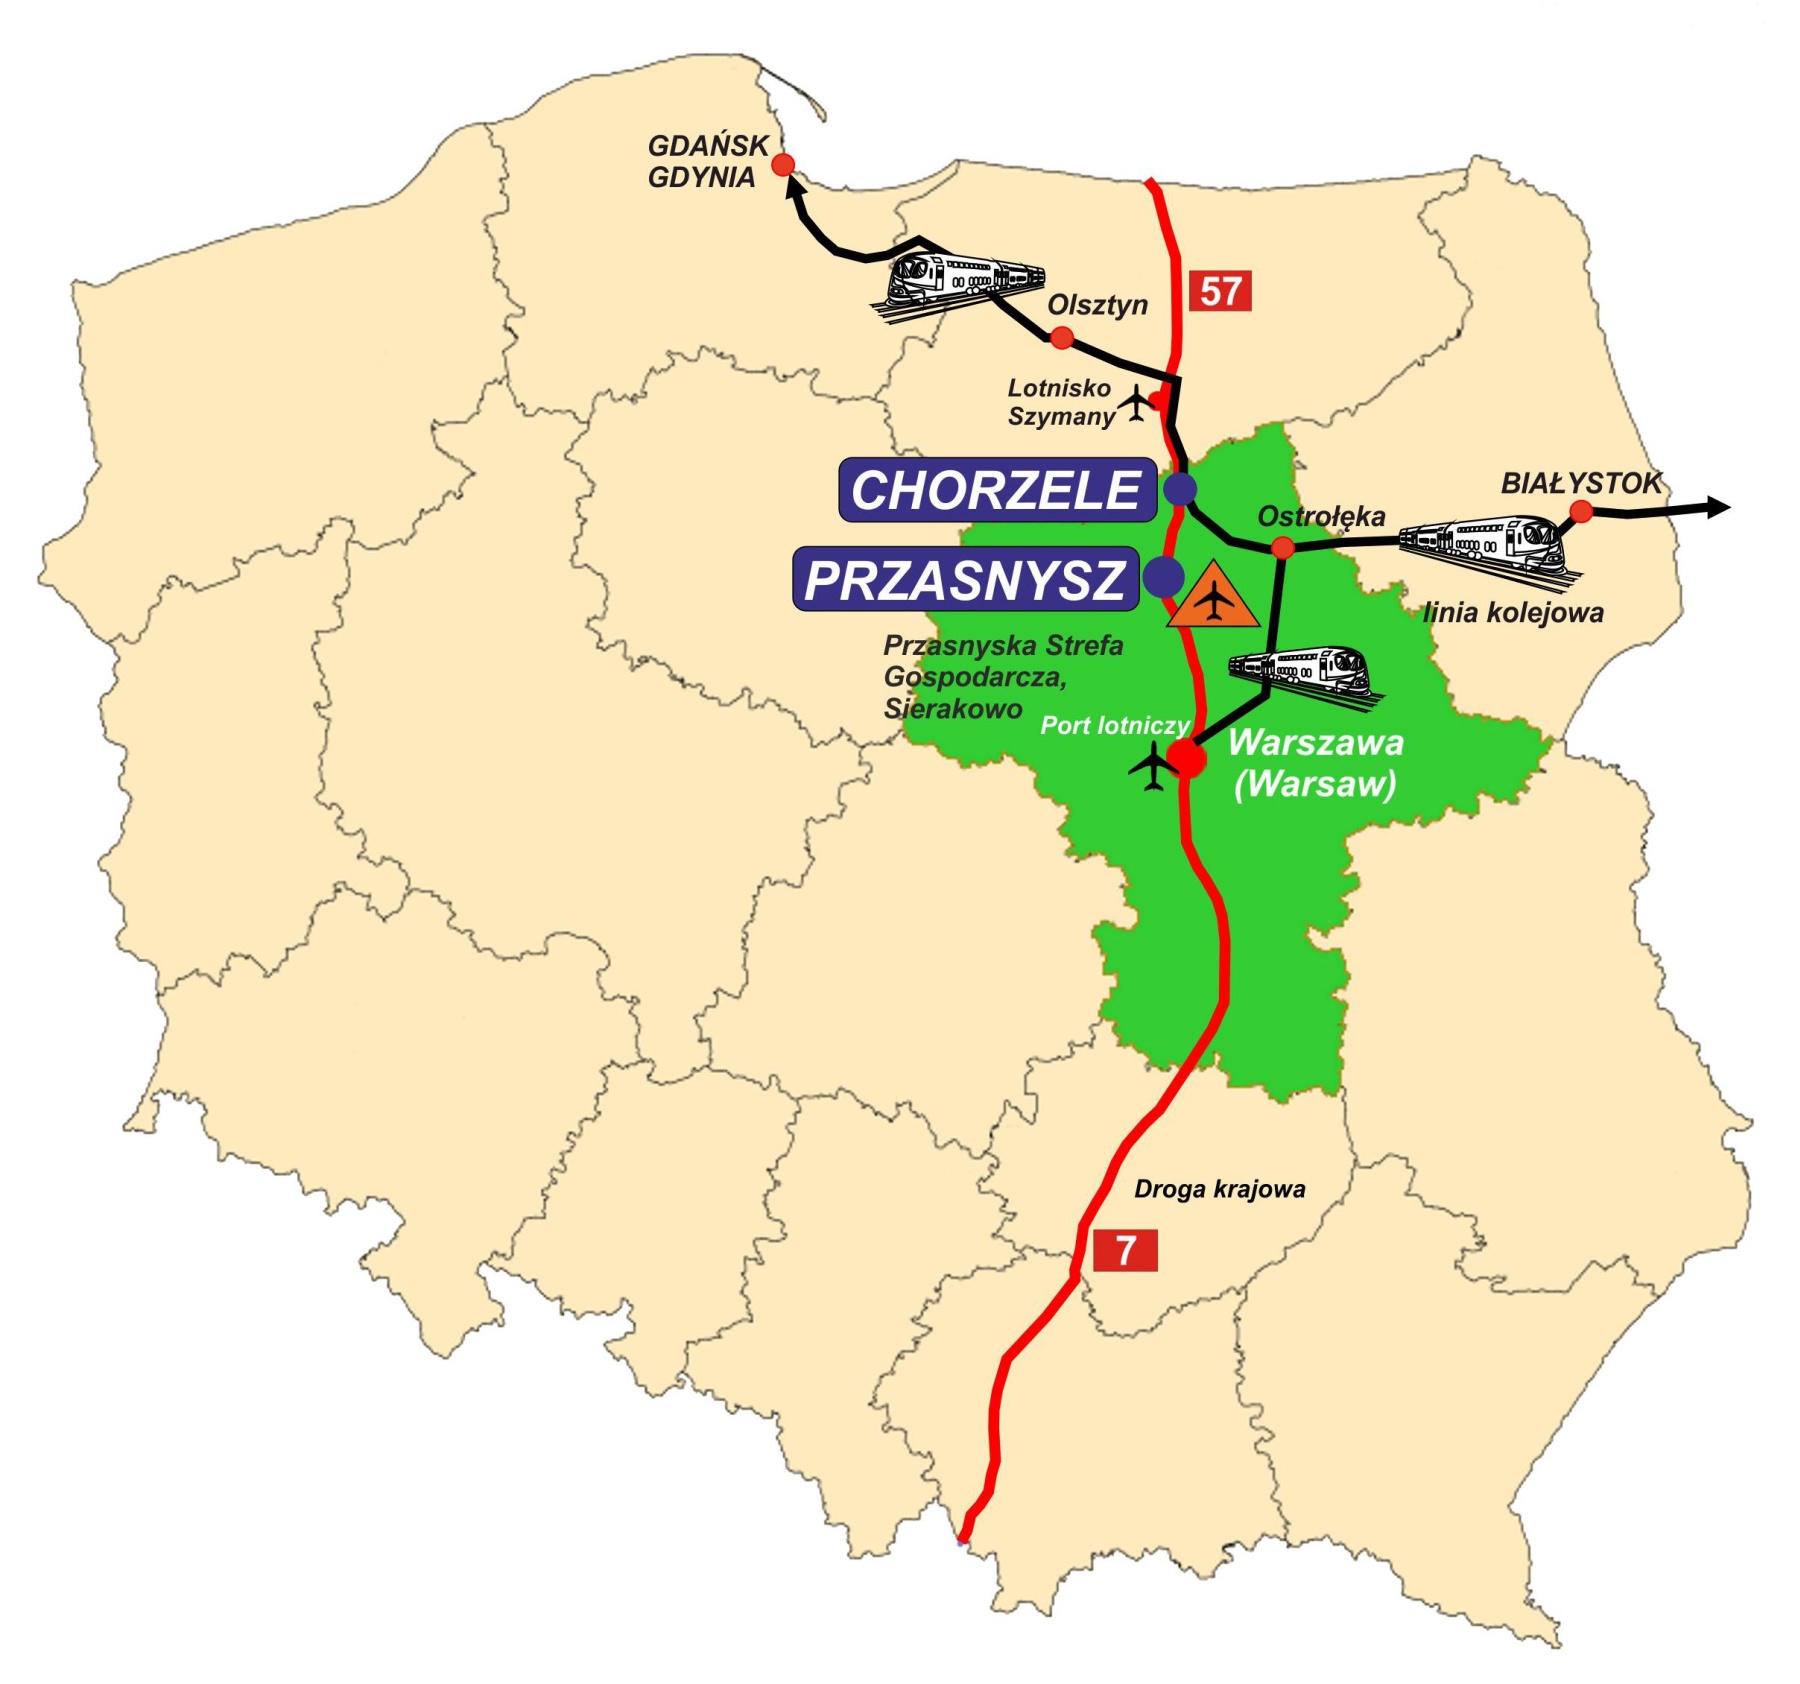 Mapa Polski z naniesionym województwem mazowieckim i miastami Przasnysz i Chorzele w postaci punktów wraz z naniesionymi drogami i liniami kolejowymi